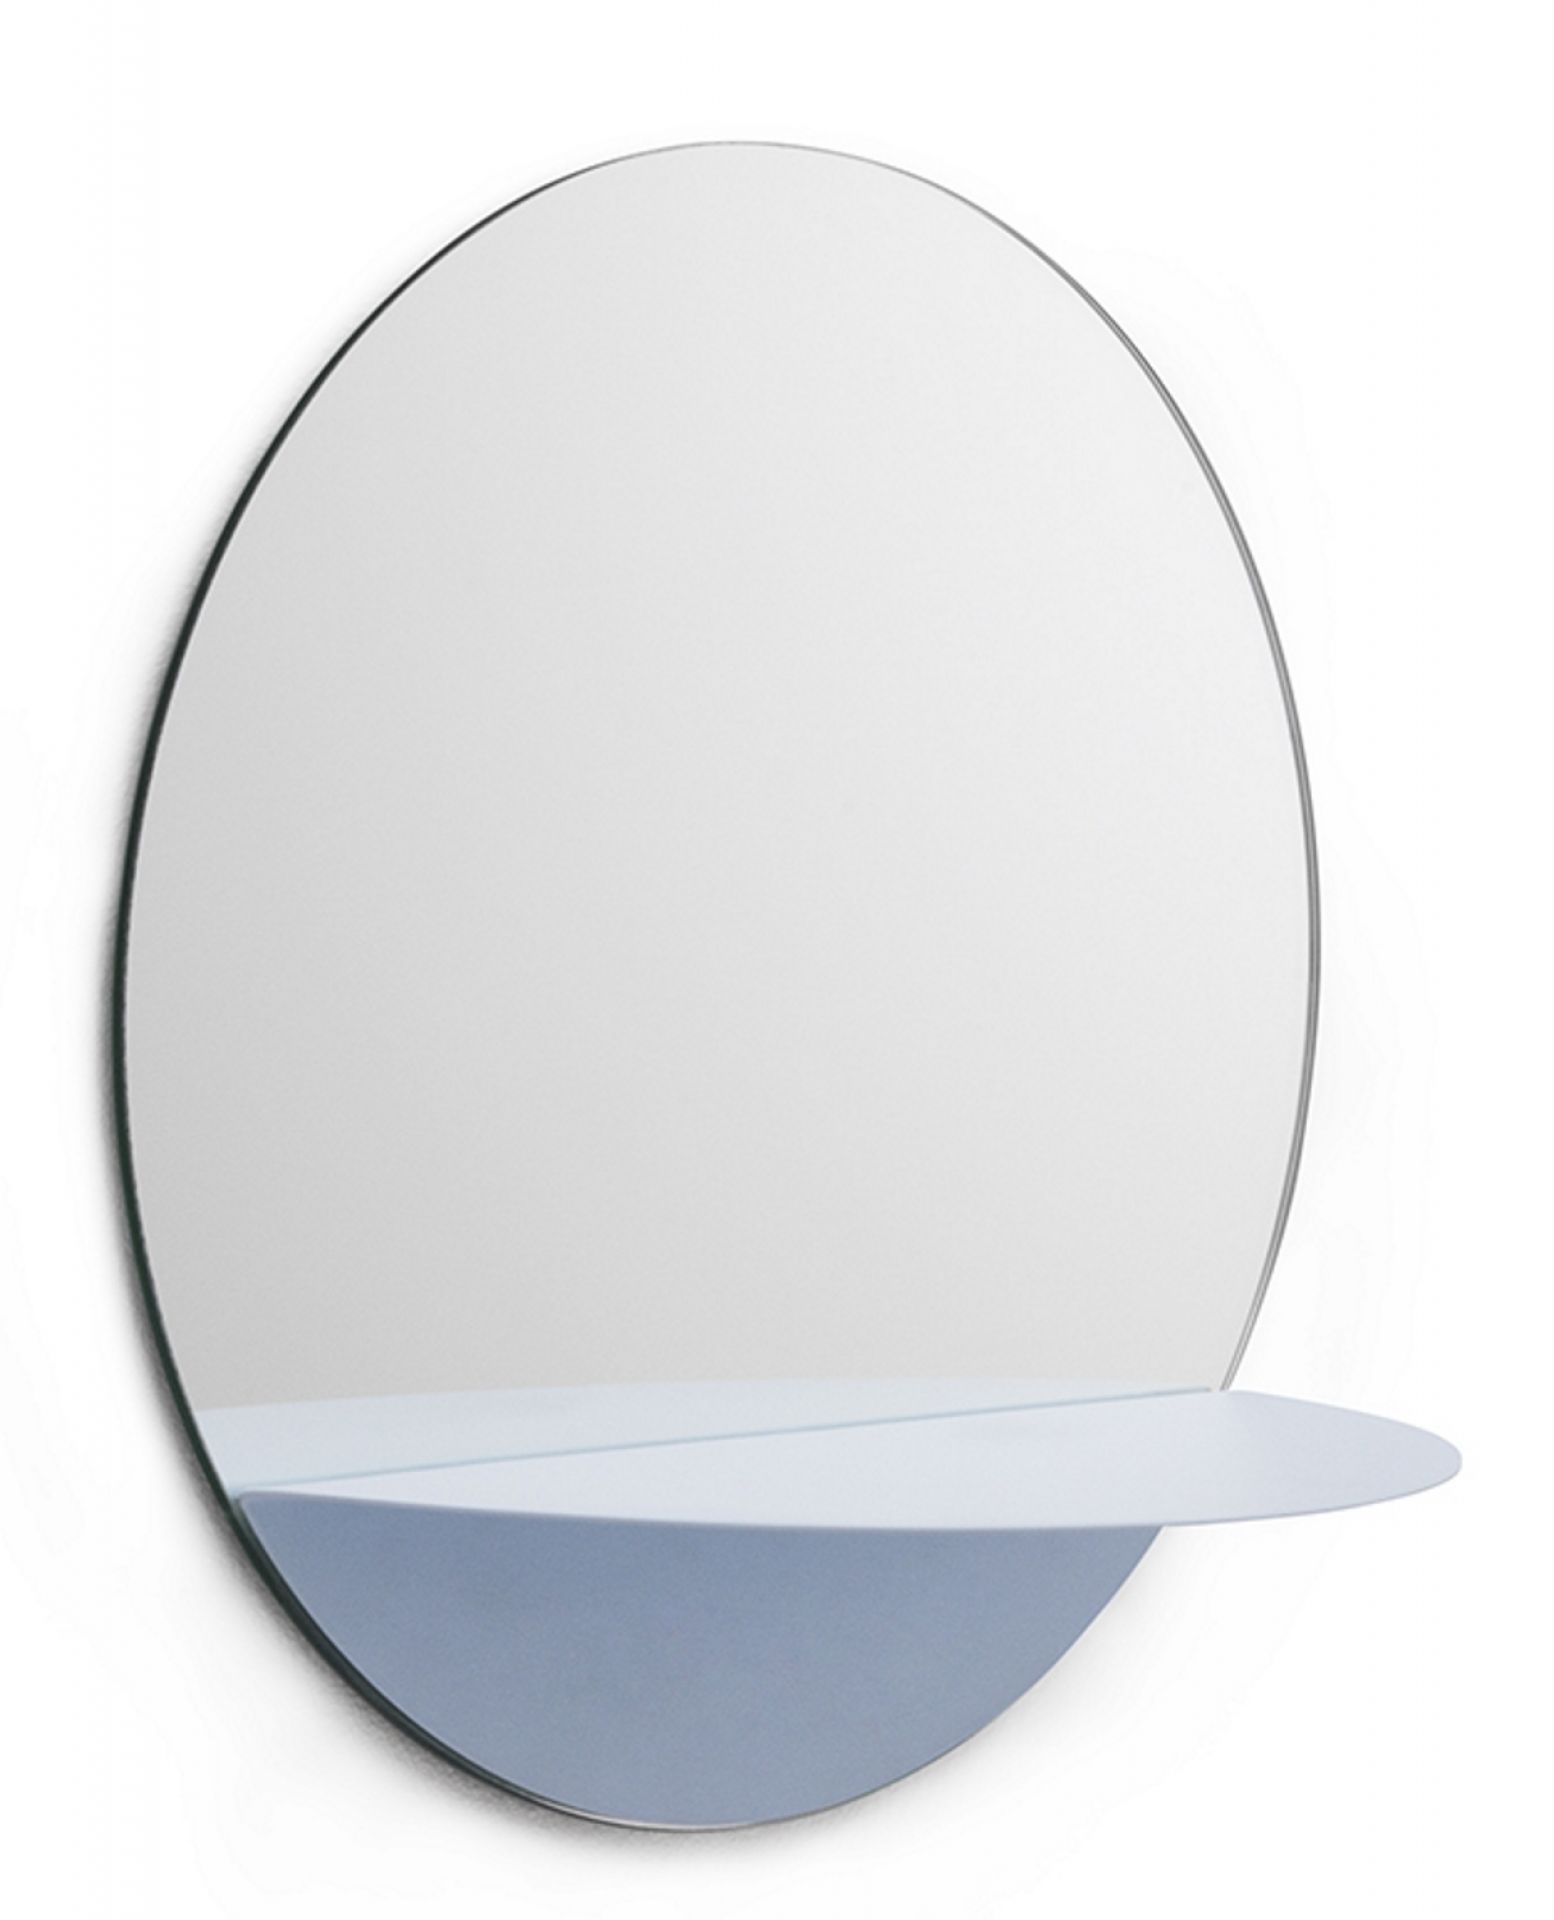 Horizon Mirror Round Spiegel Normann Copenhagen-hell blau